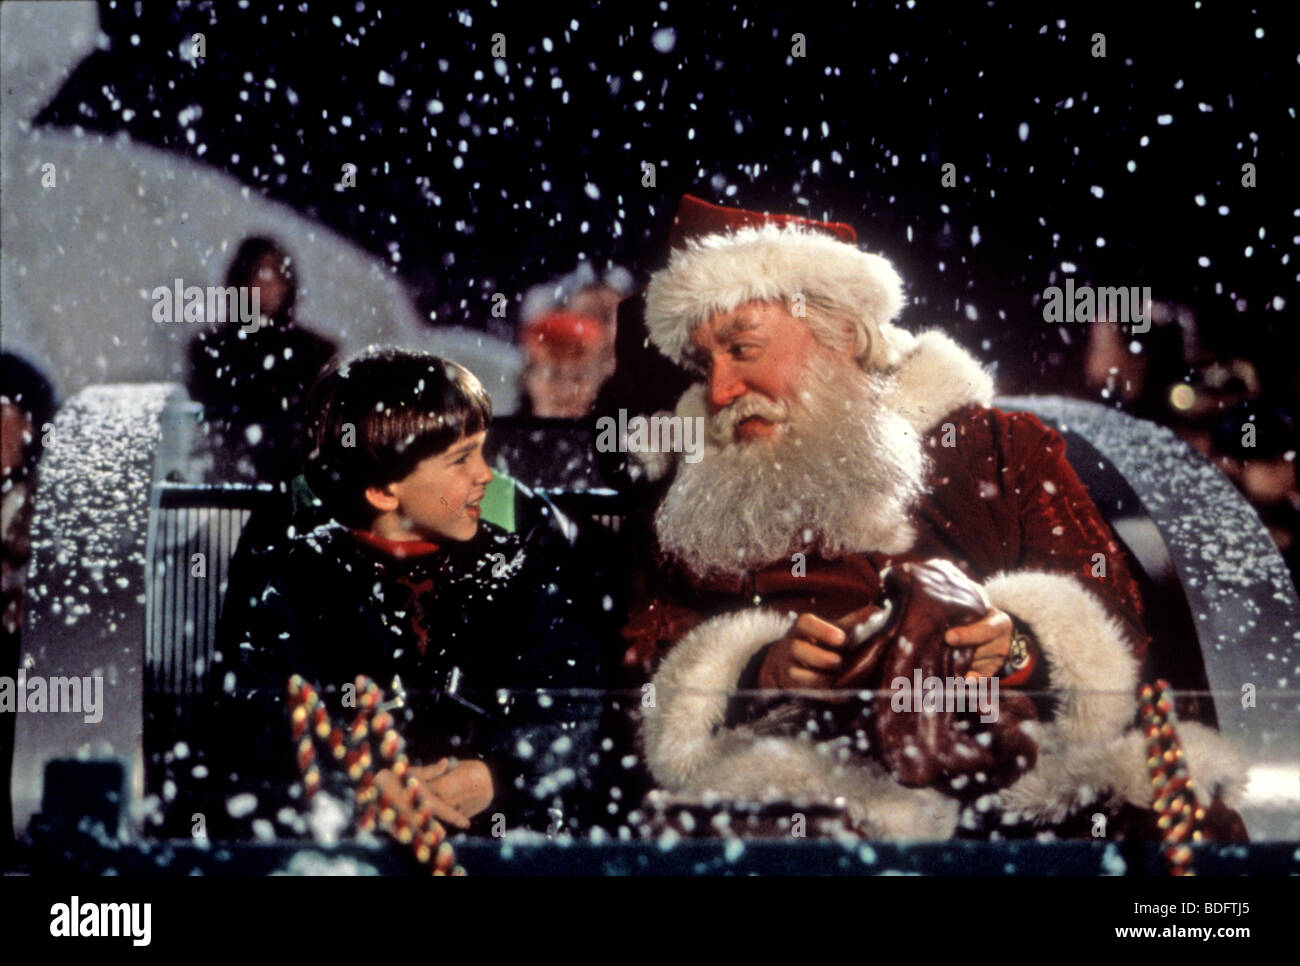 Babbo Natale Walt Disney.Il Babbo Natale 1994 Buena Vista Film Di Walt Disney Con Tim Allen Foto Stock Alamy